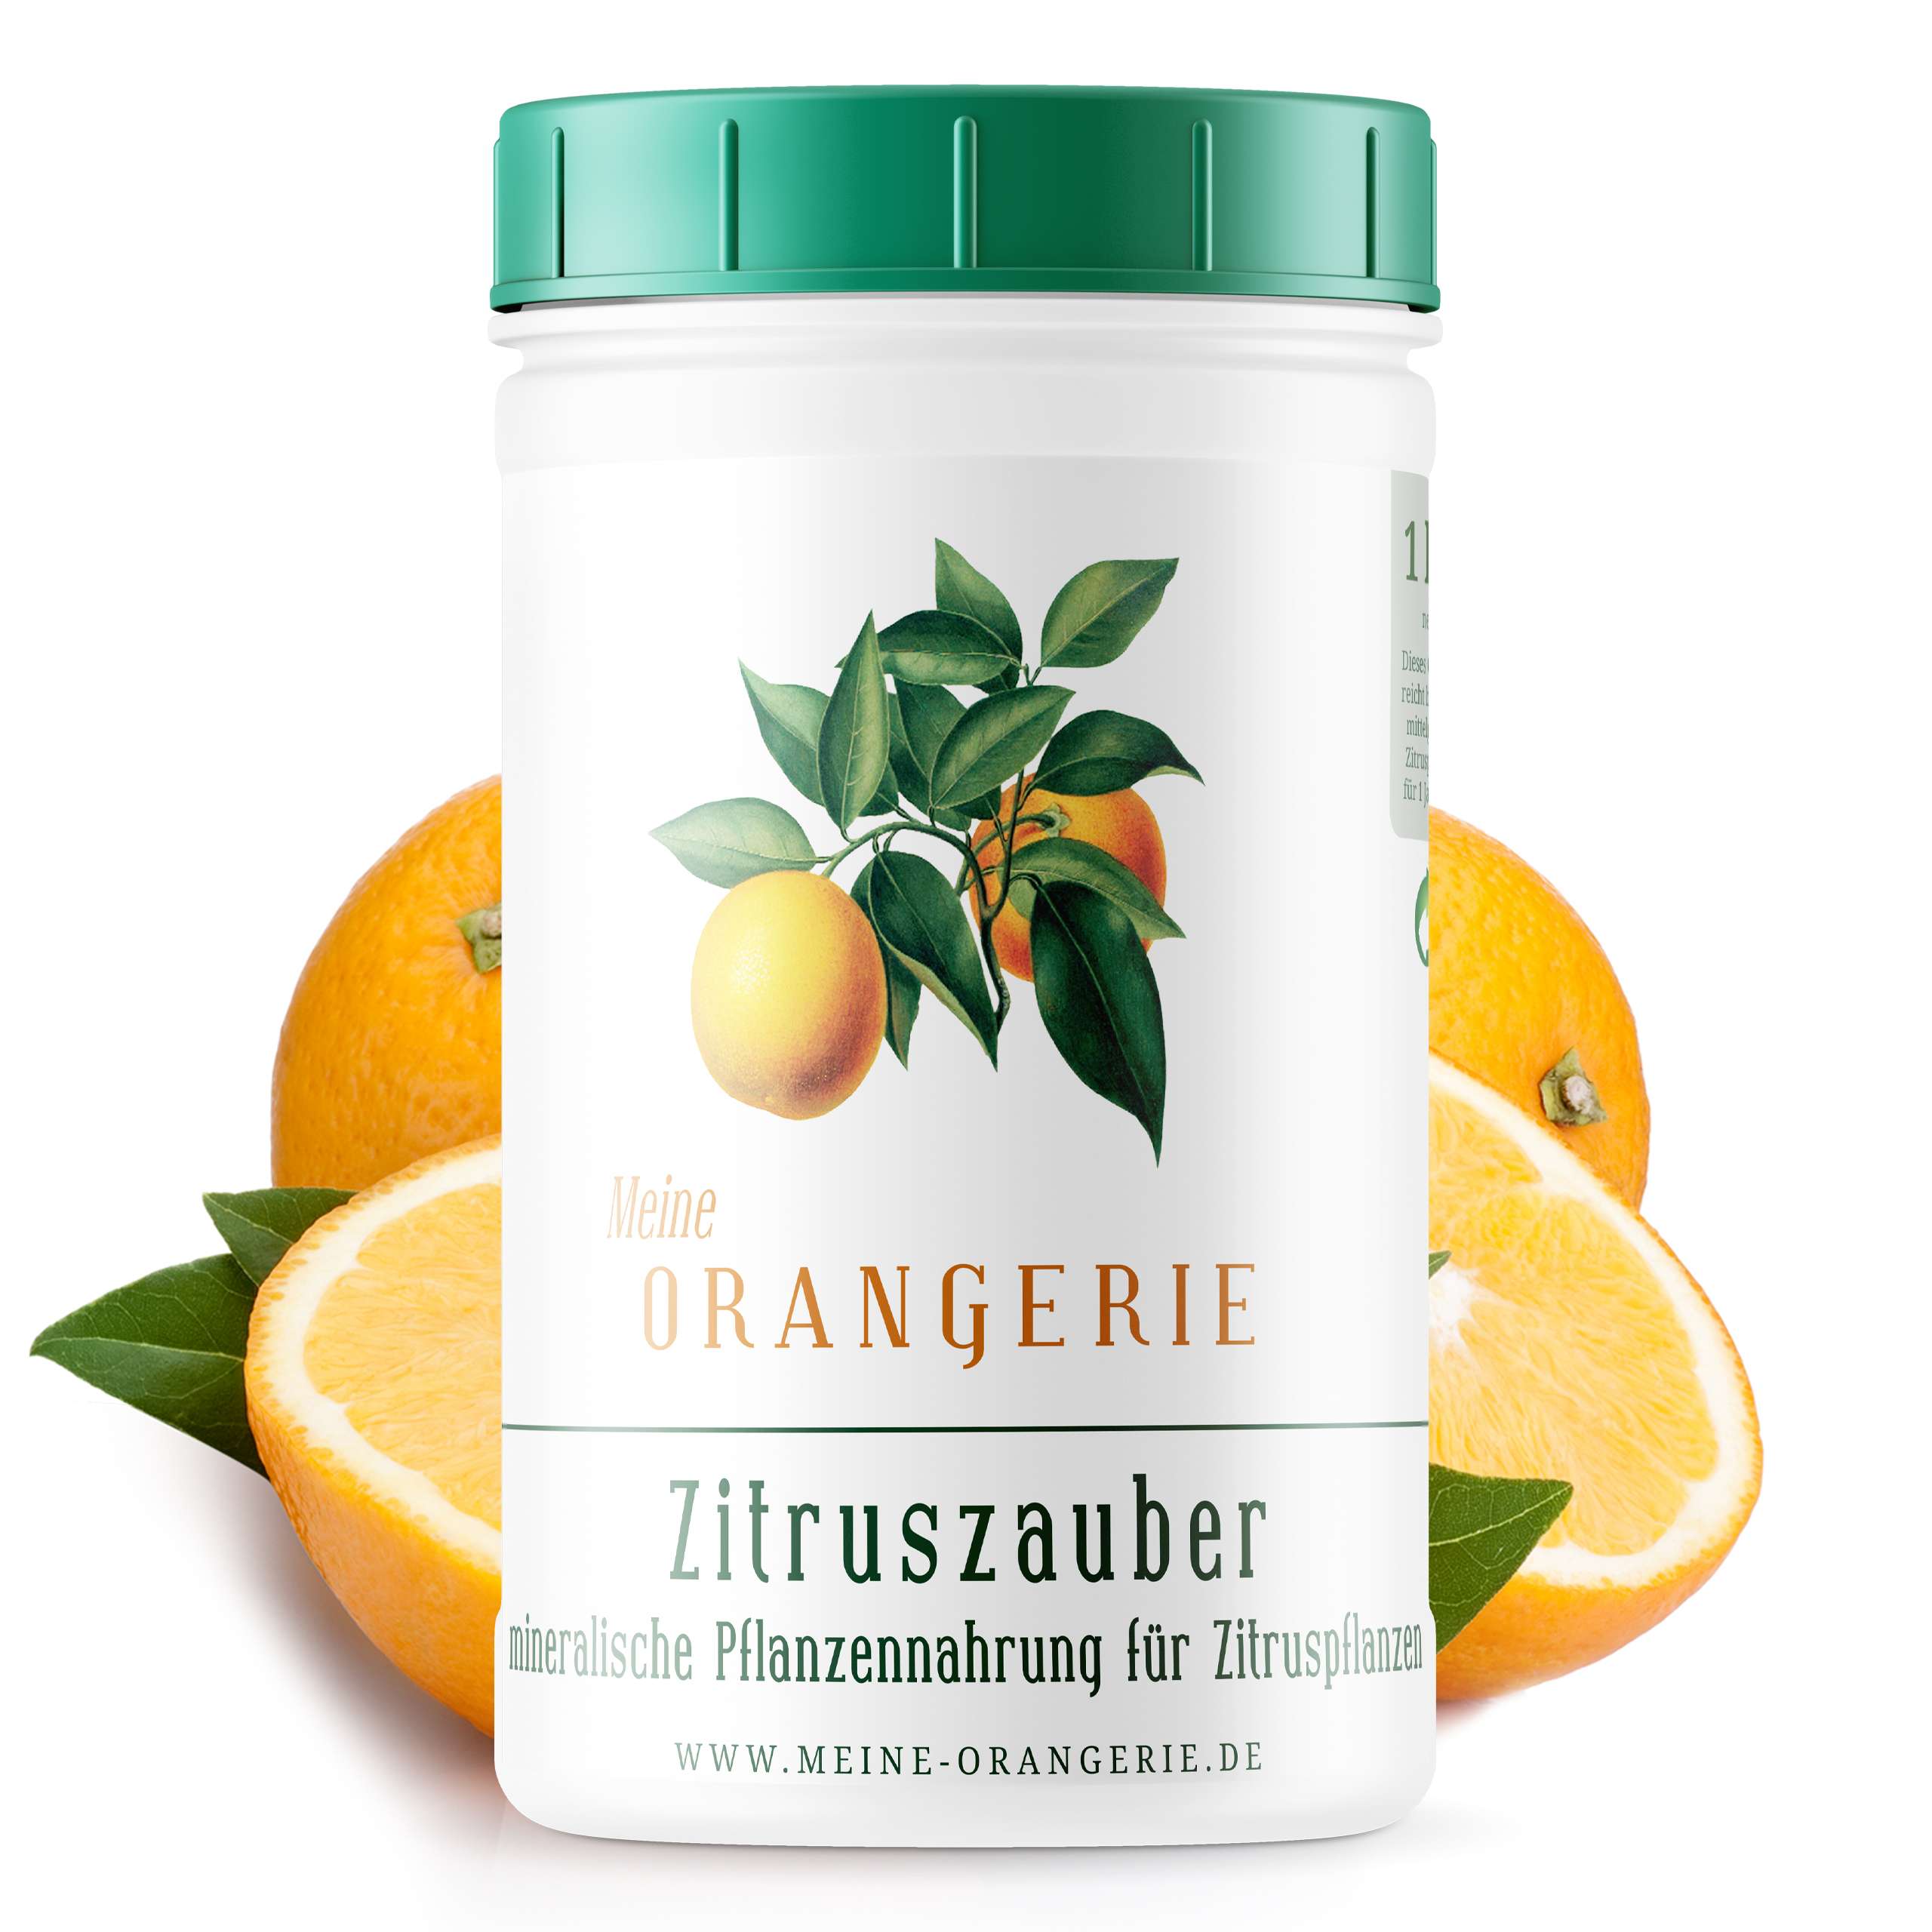 Meine Orangerie Zitruszauber |1kg| Profi Zitrusdünger für alle Zitruspflanzen